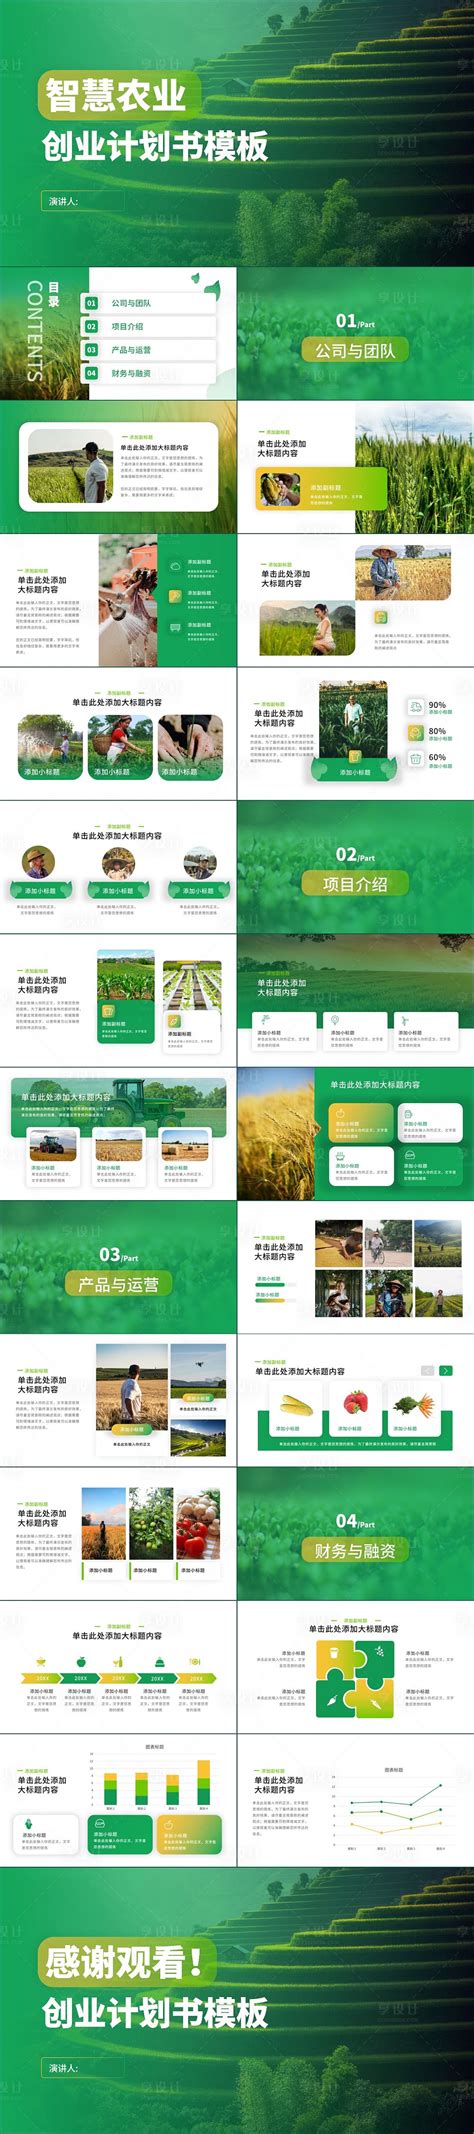 智慧农业海报-智慧农业海报模板-智慧农业海报设计-千库网